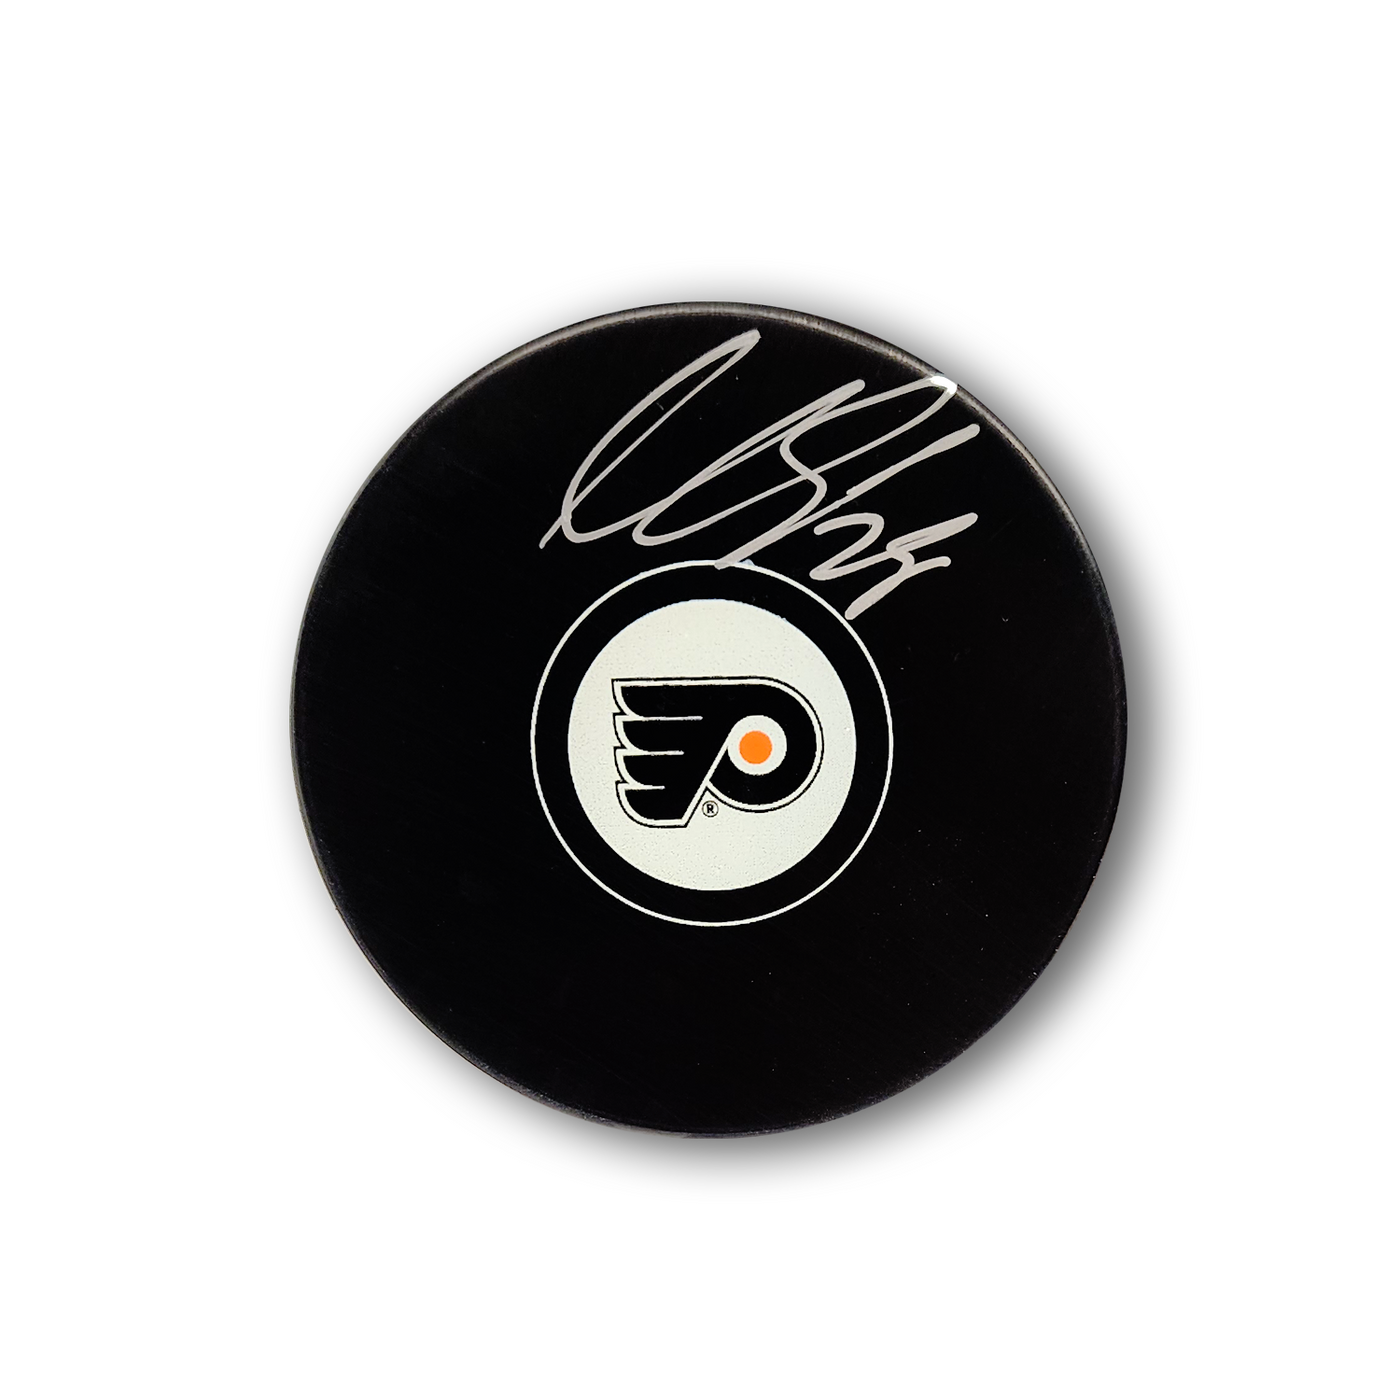 Claude Giroux Autographed Philadelphia Flyers Hockey Puck